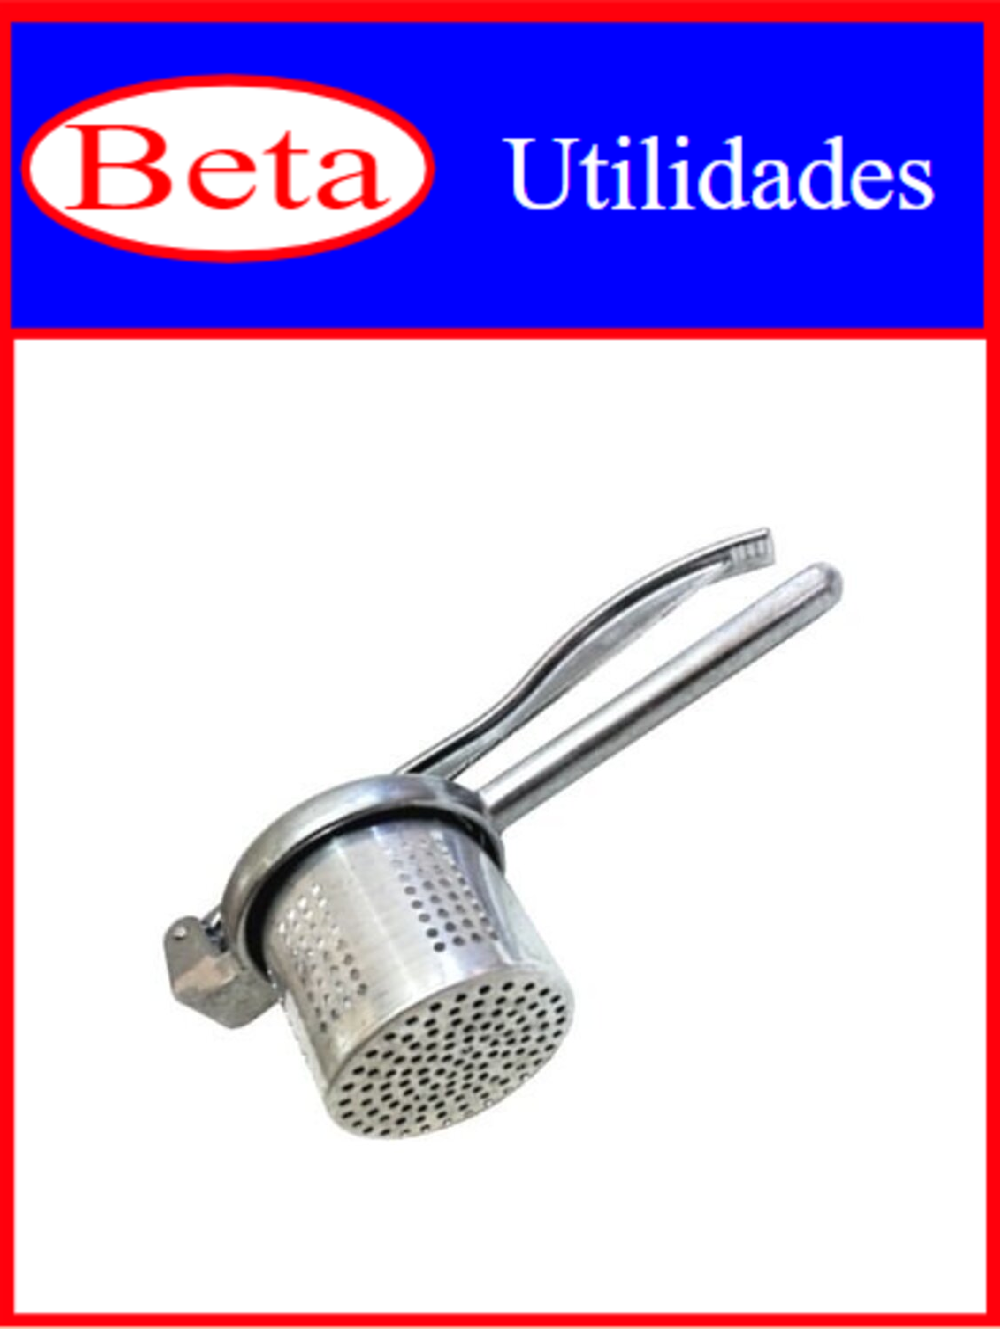 7898021405637 - ESPREMEDOR BETA BATATA